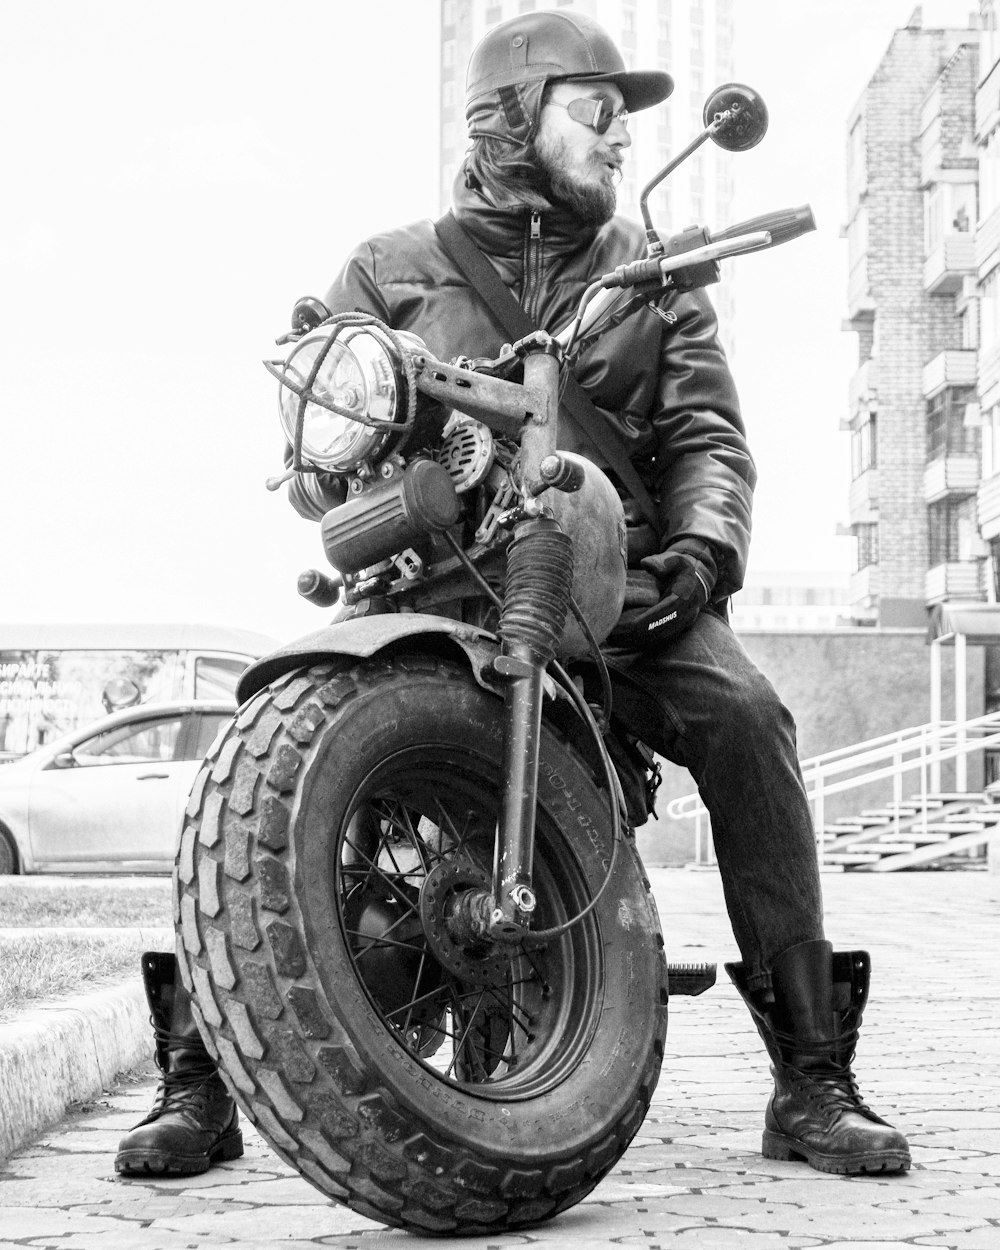 오토바이를 타는 남자의 그레이스케일 사진